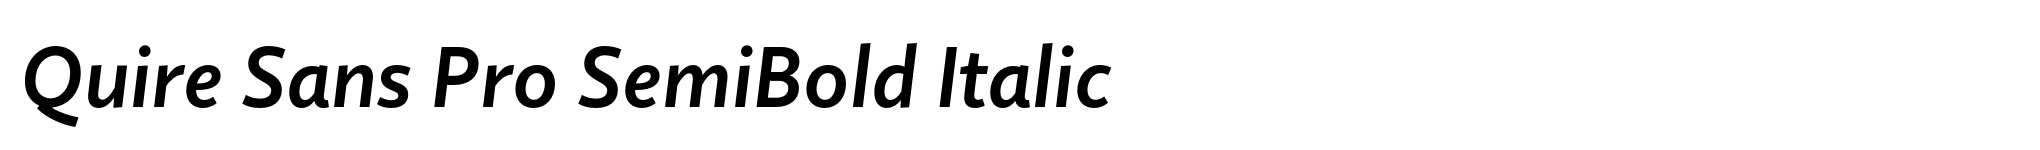 Quire Sans Pro SemiBold Italic image